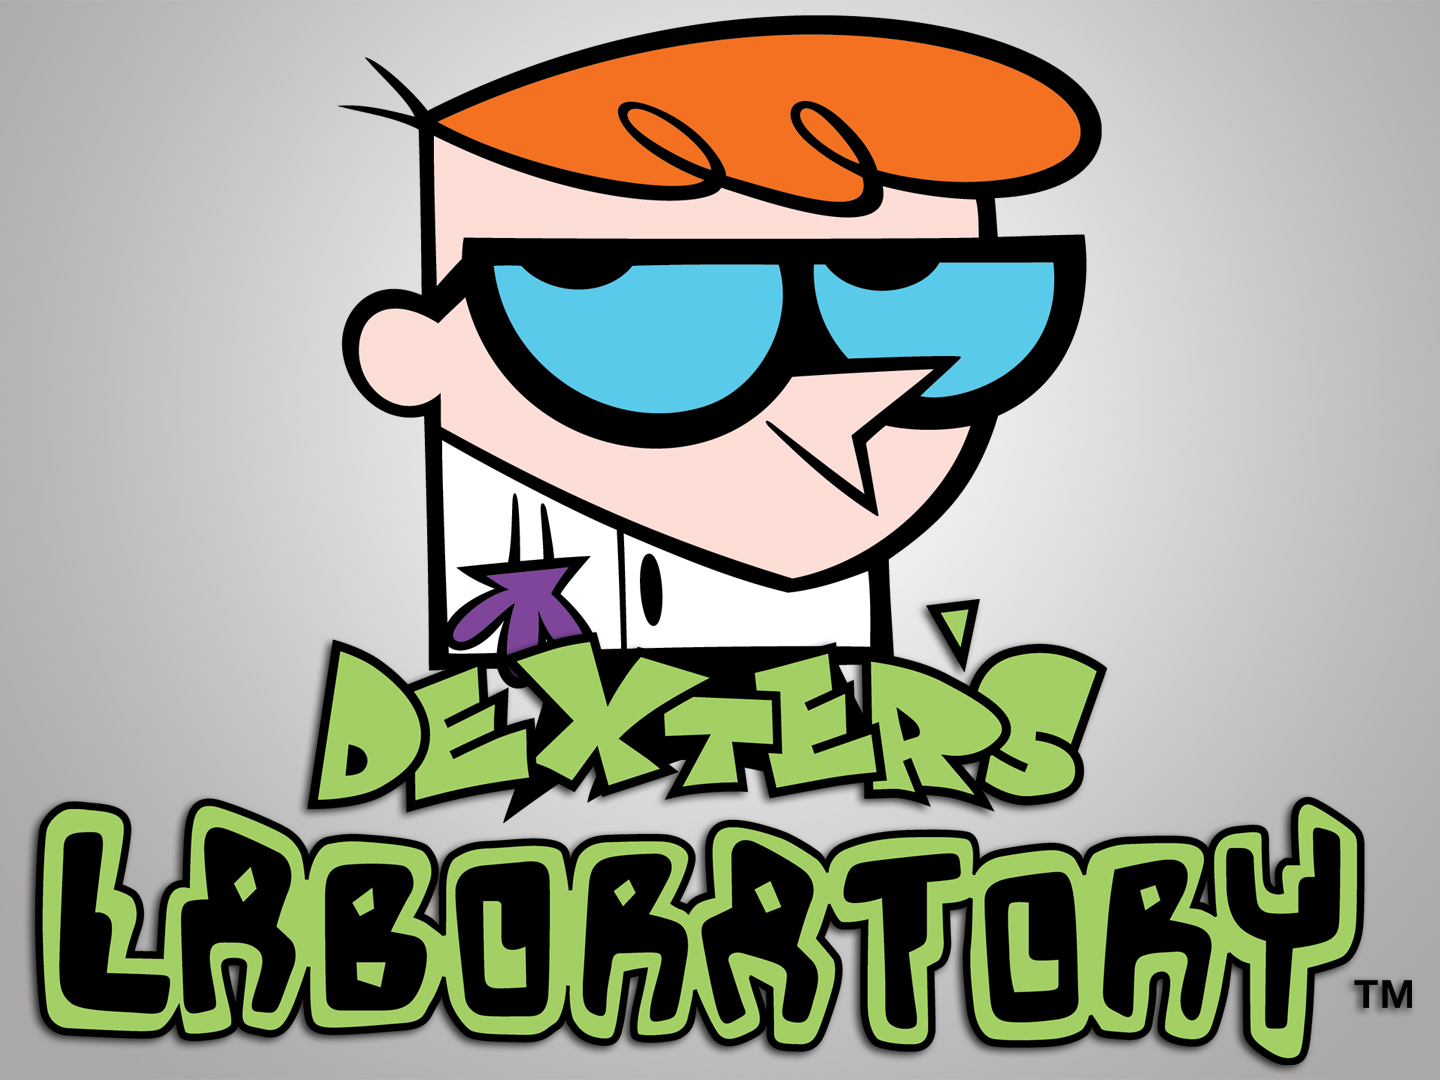 dexter's laboratory, dexter (dexter's laboratory), tv show